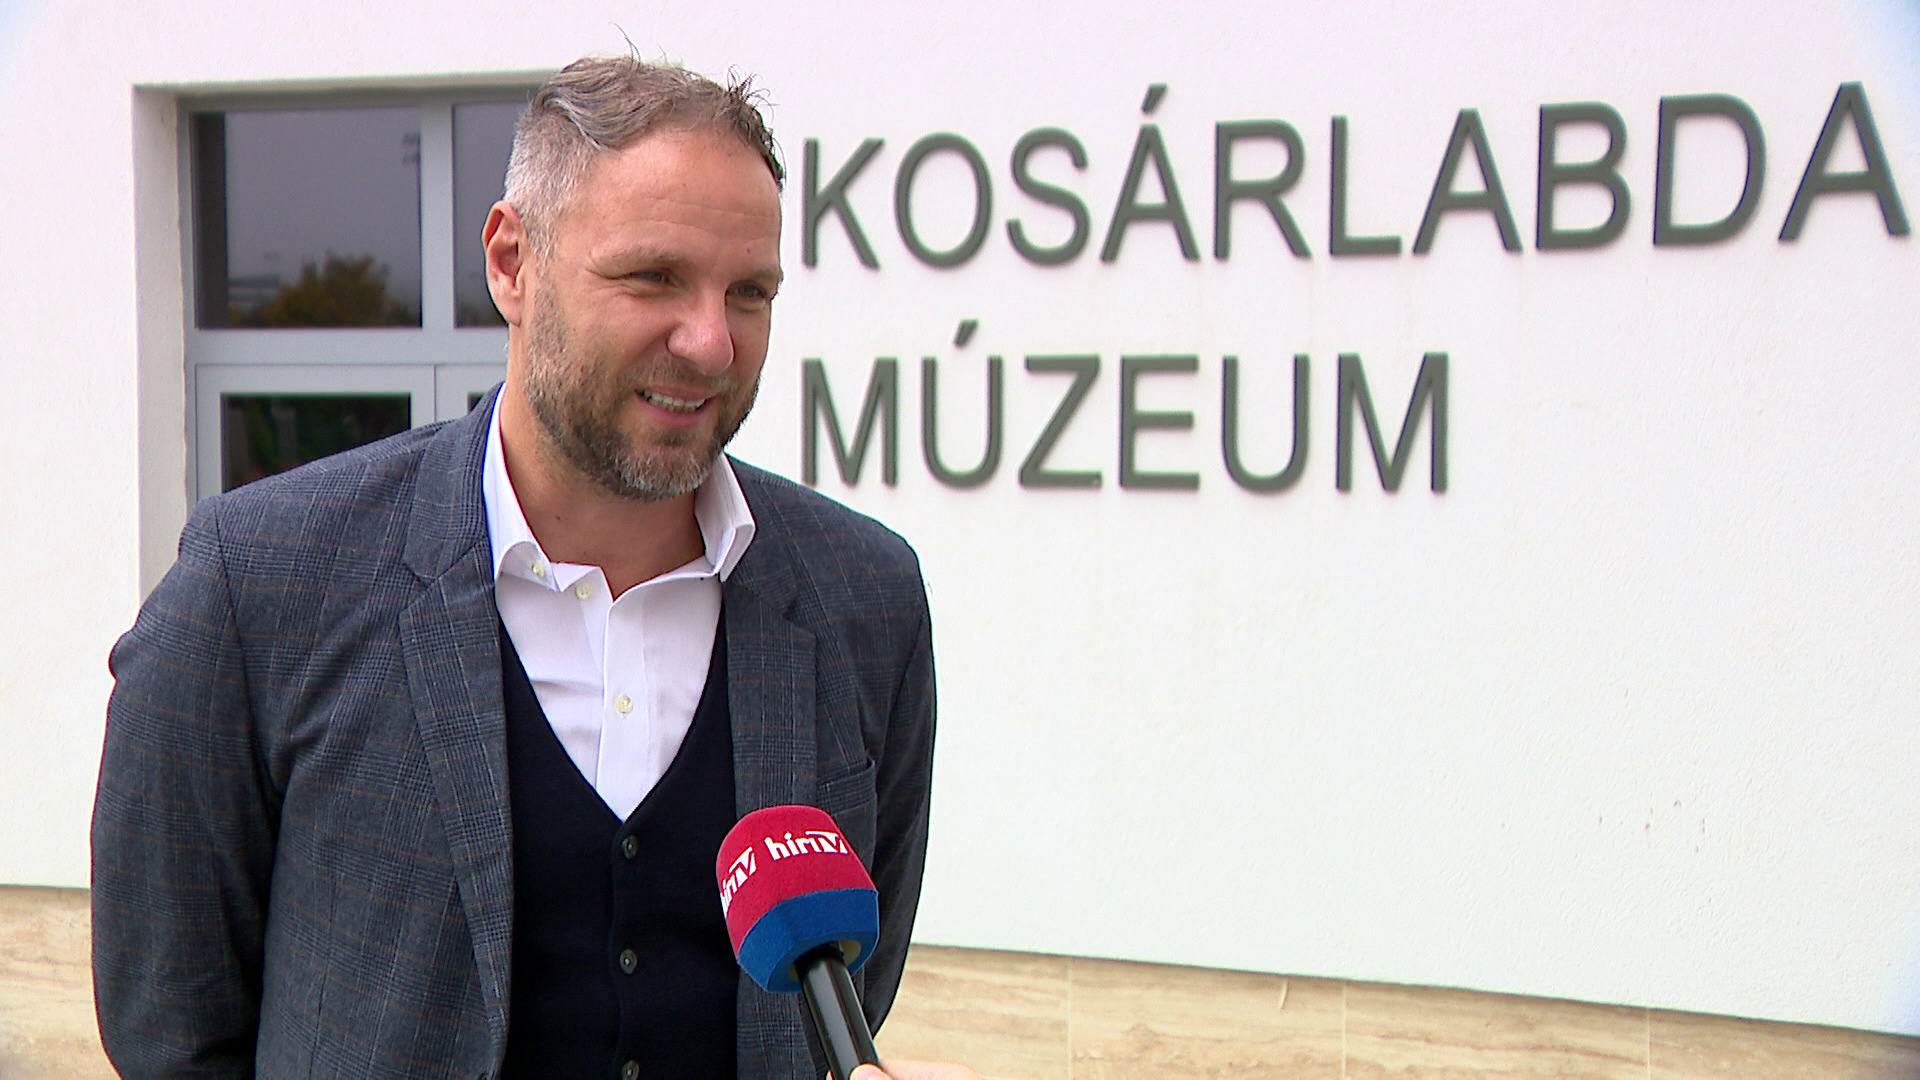 Különleges ereklyék is láthatók a Magyar Kosárlabda Múzeumban